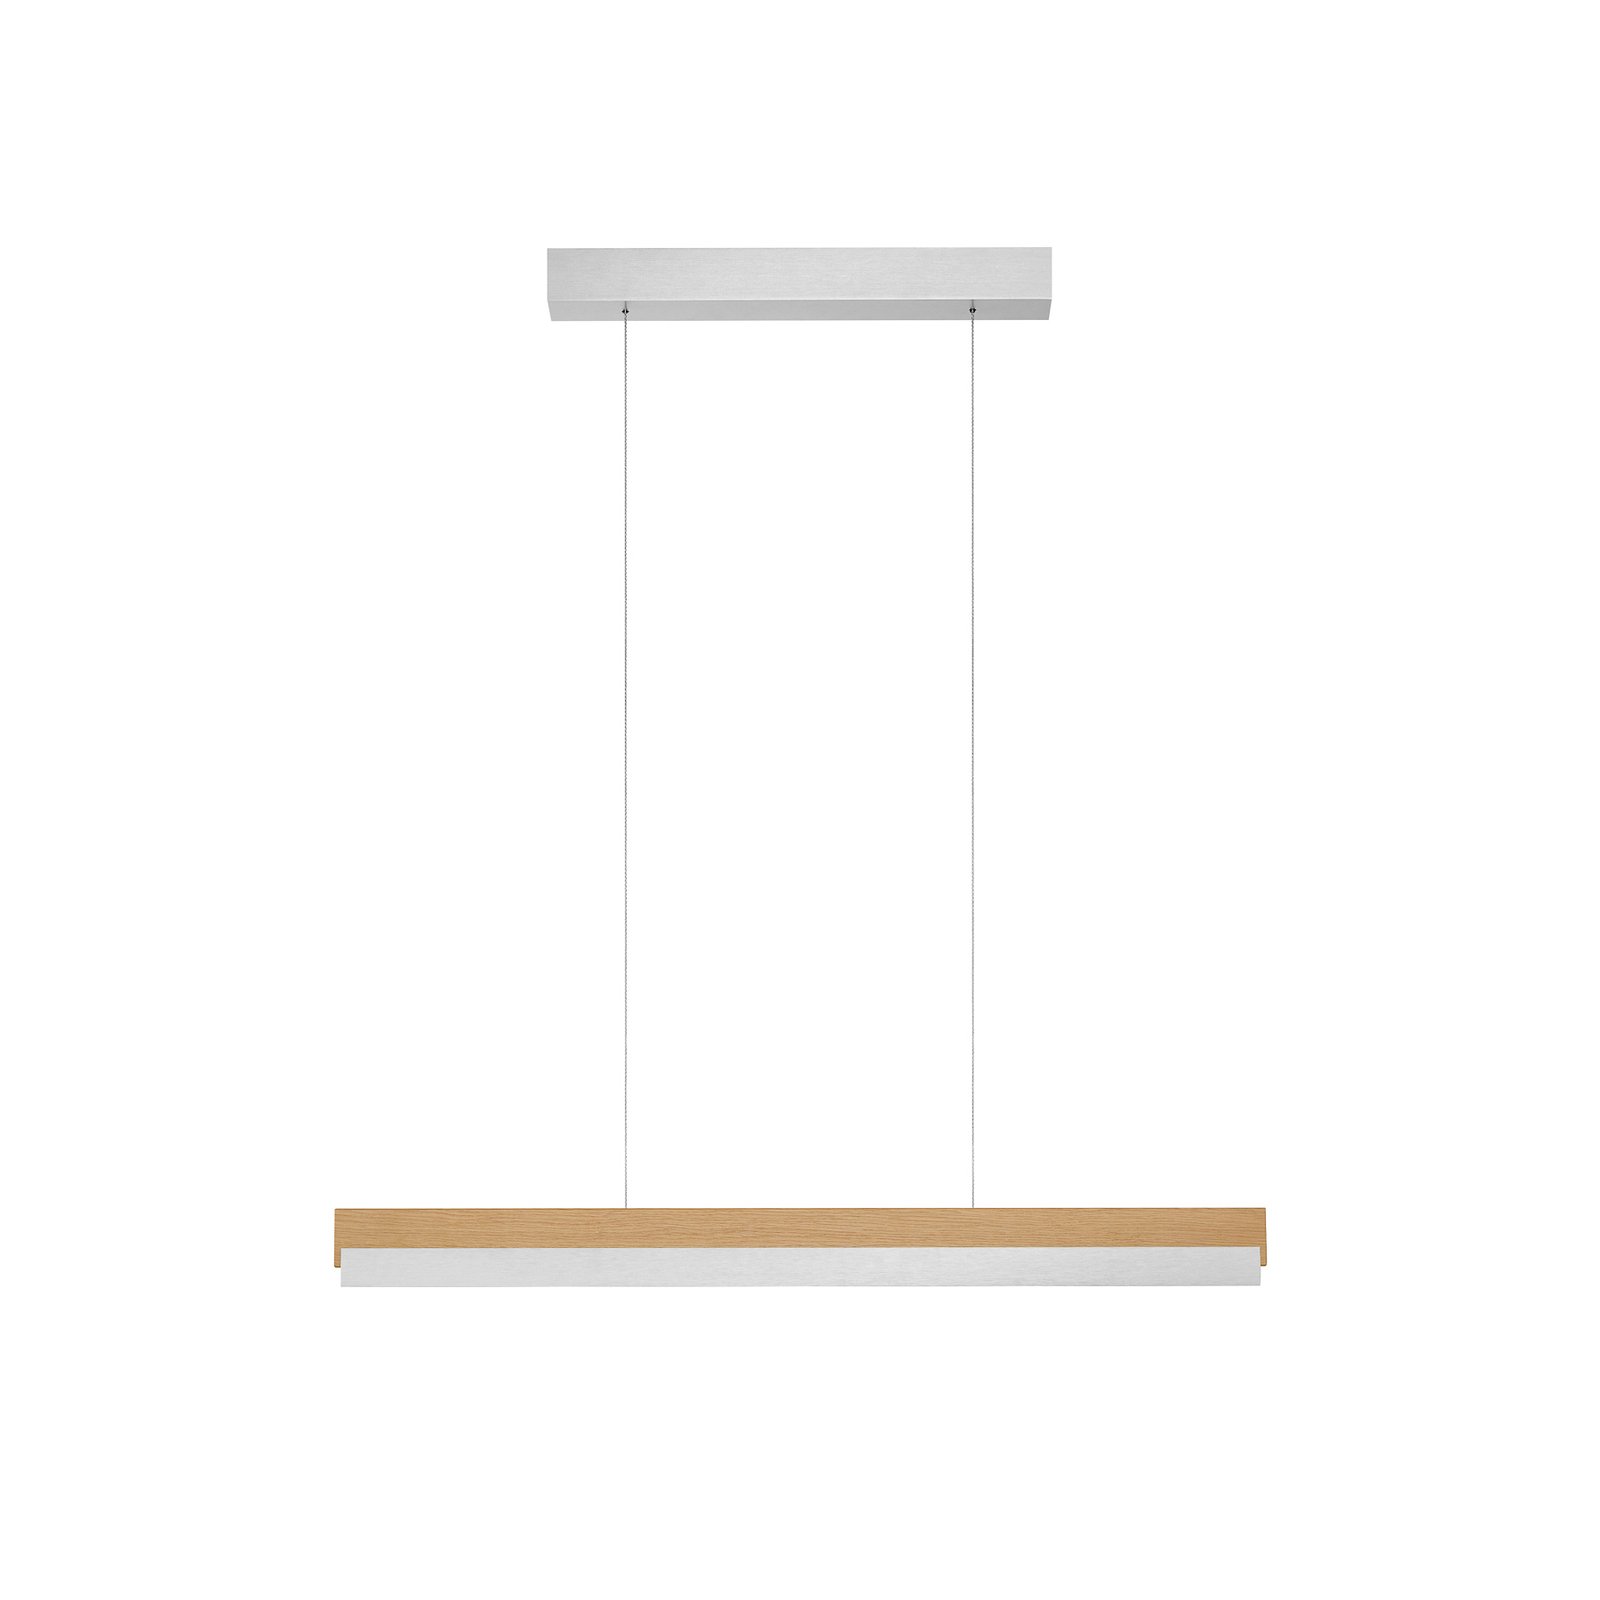 Quitani hanglamp Keijo, nikkel/eiken, 83 cm